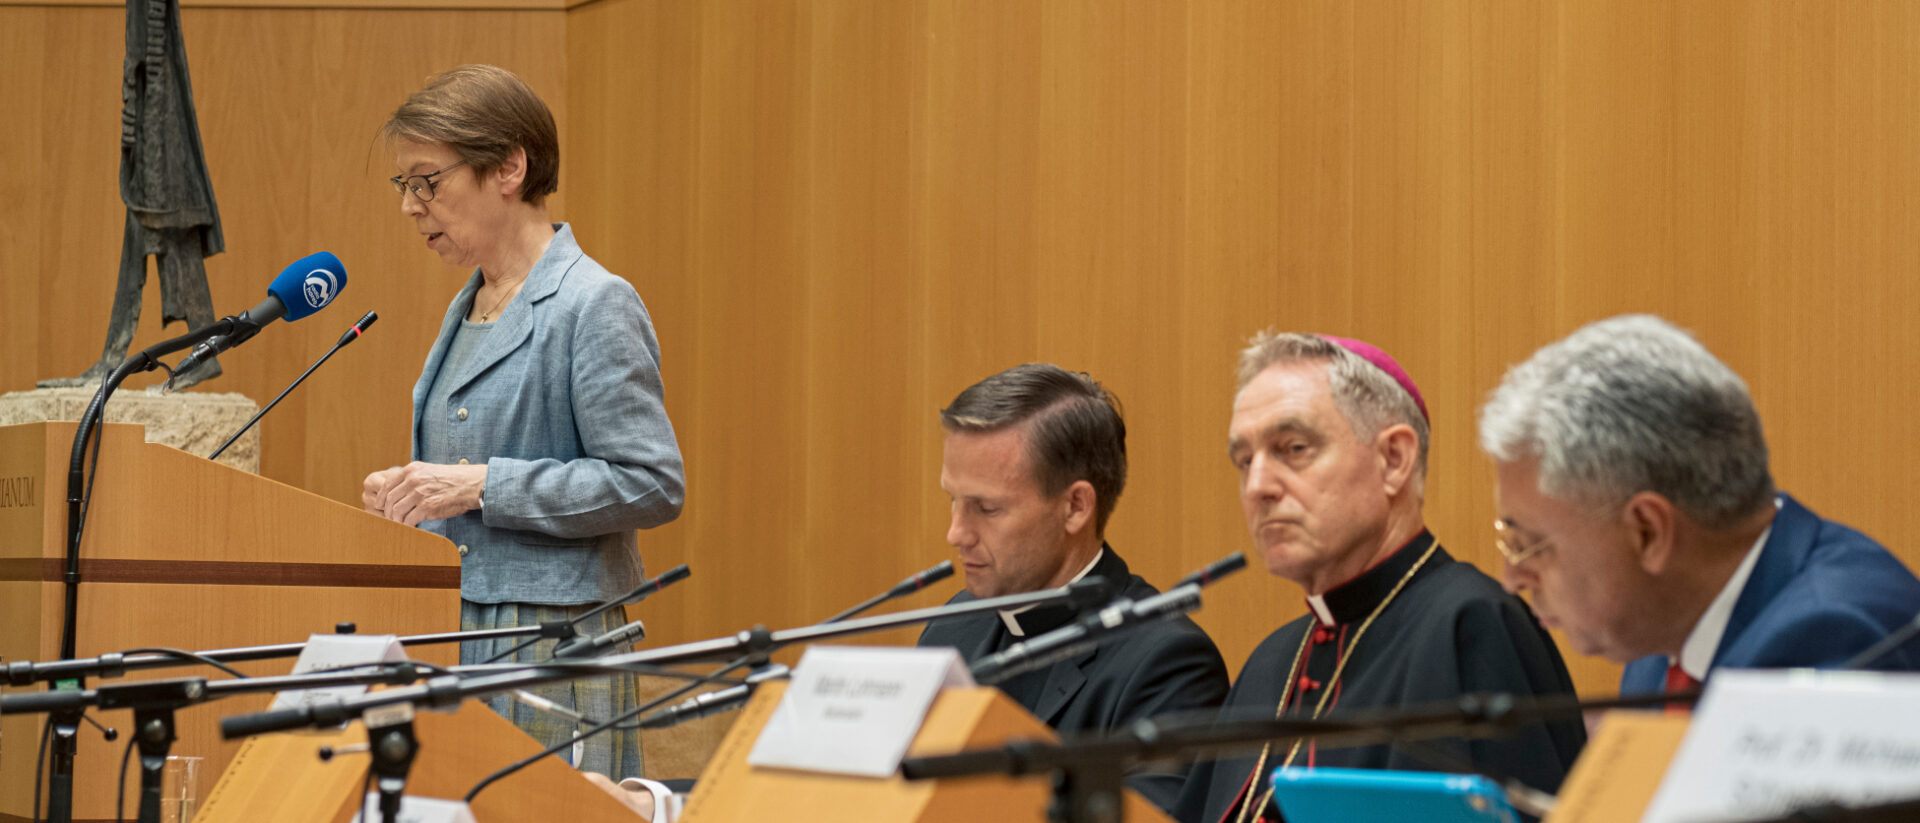 Barbara Hallensleben an einer Tagung des Benedikt-Schülerkreises in Rom. Erzbischof Georg Gänswein (zweiter von rechts) hört zu.